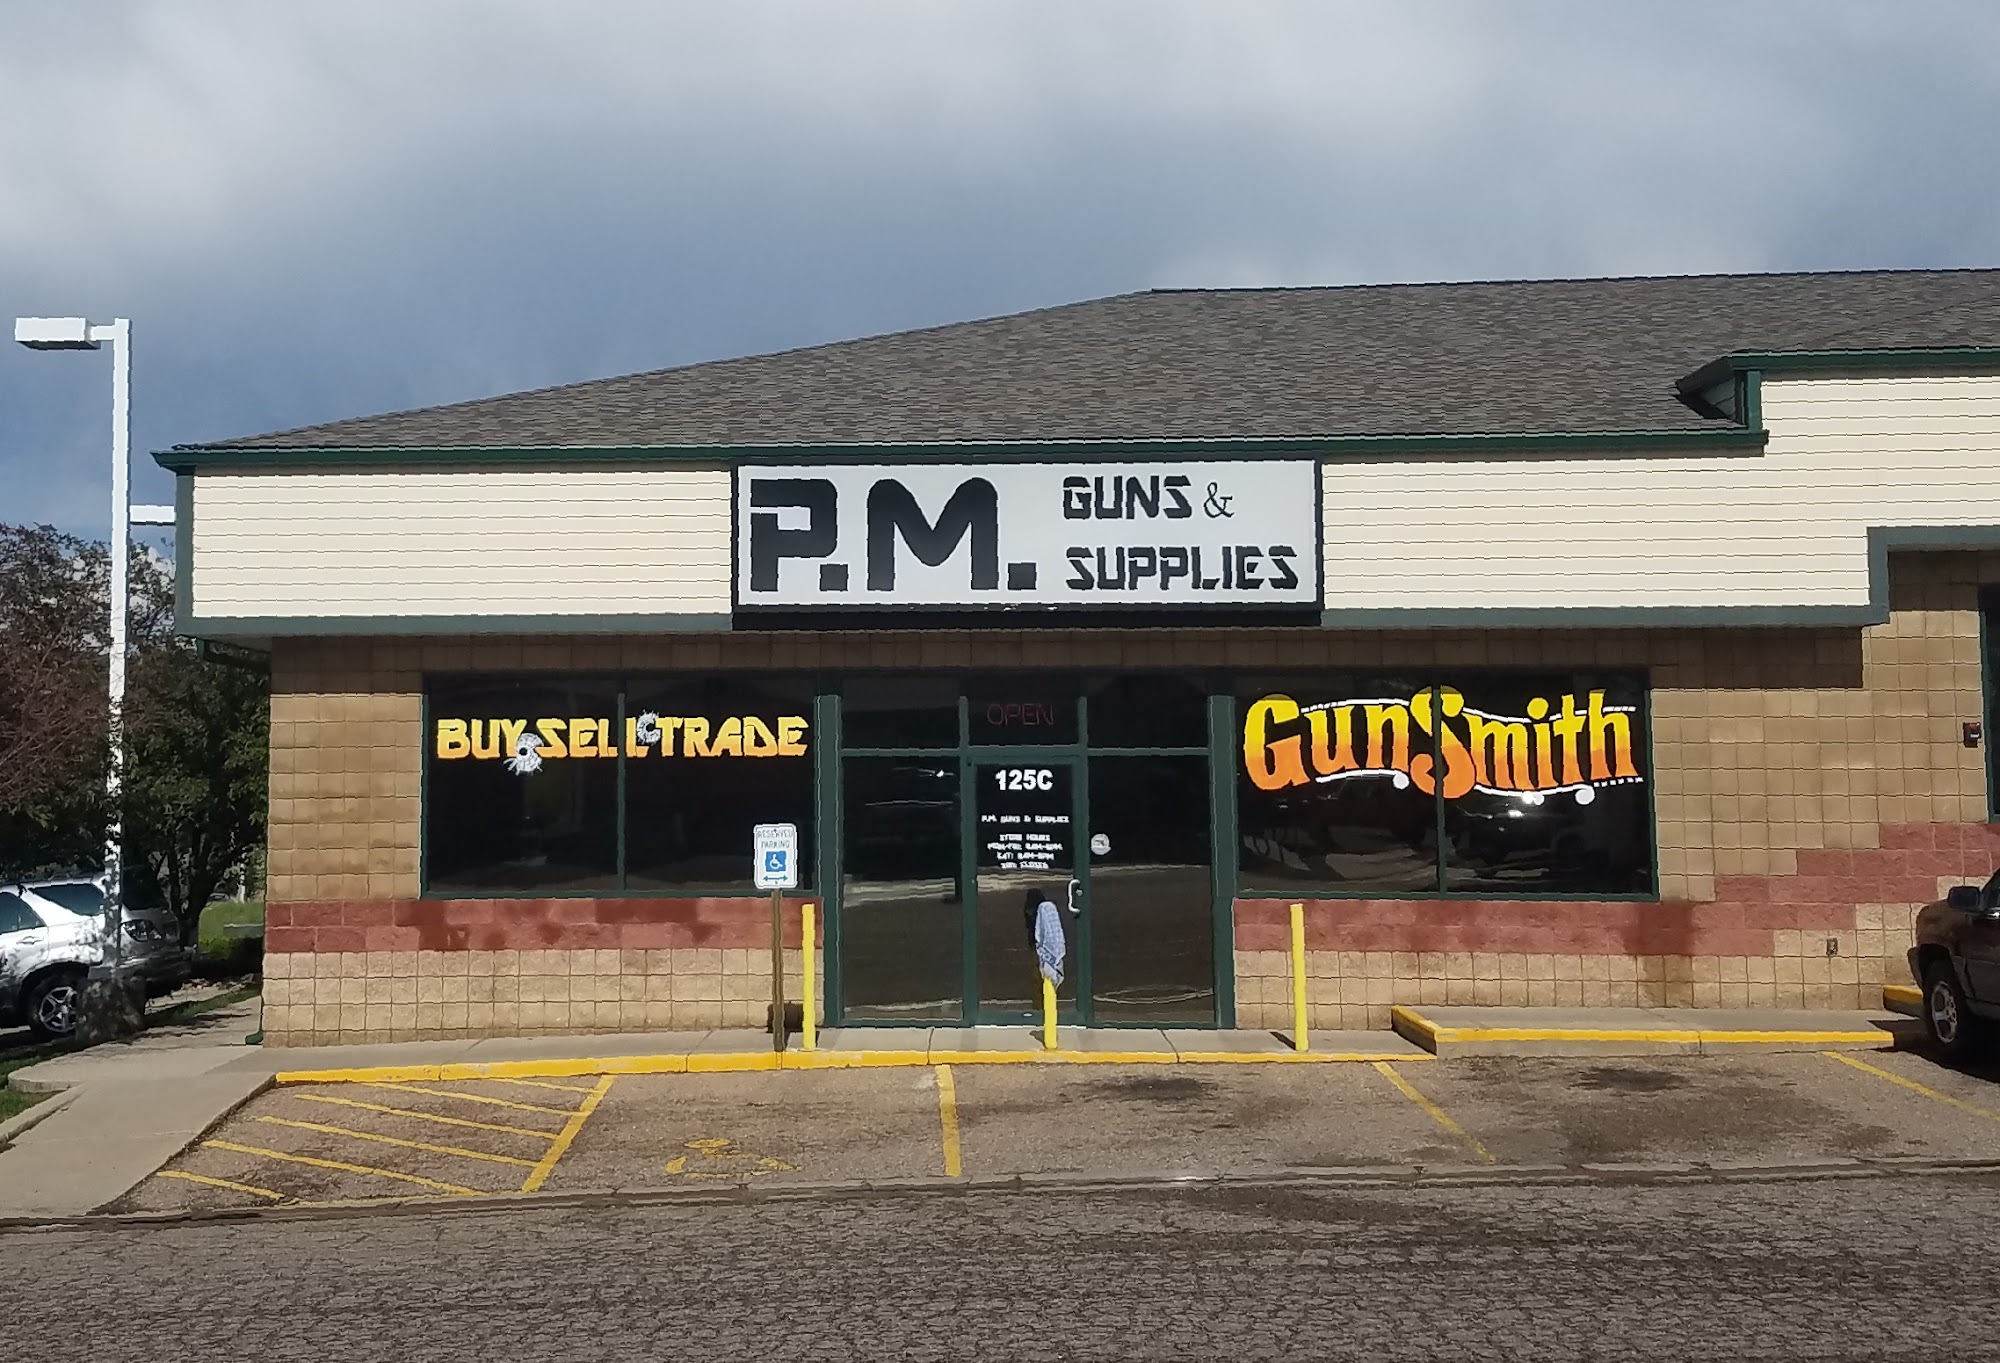 P.M. Guns & Supplies